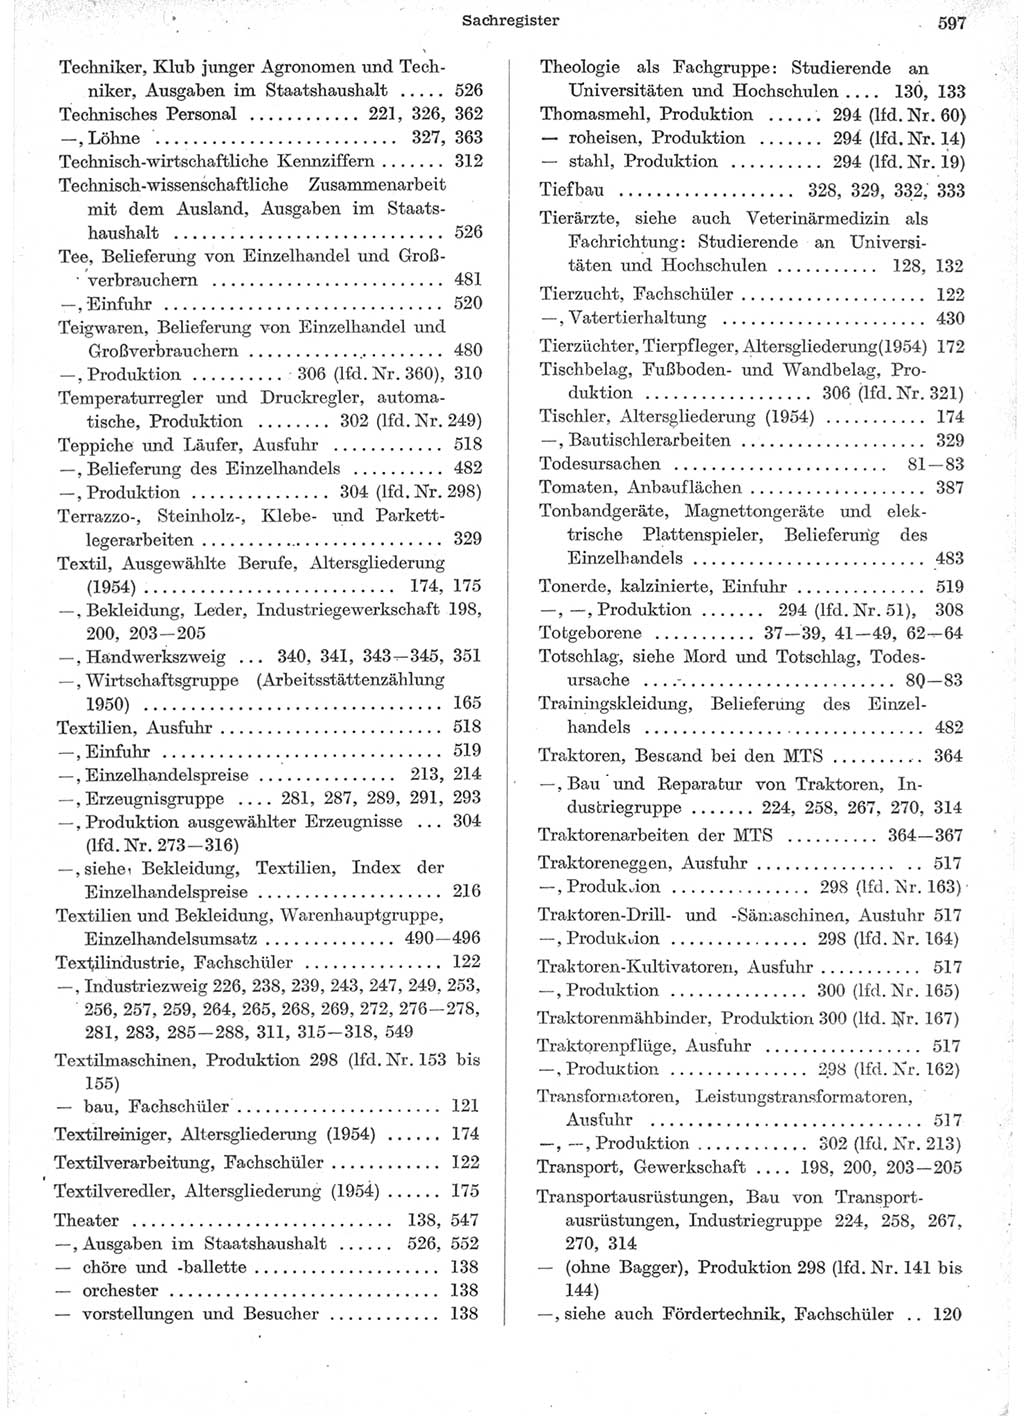 Statistisches Jahrbuch der Deutschen Demokratischen Republik (DDR) 1957, Seite 597 (Stat. Jb. DDR 1957, S. 597)